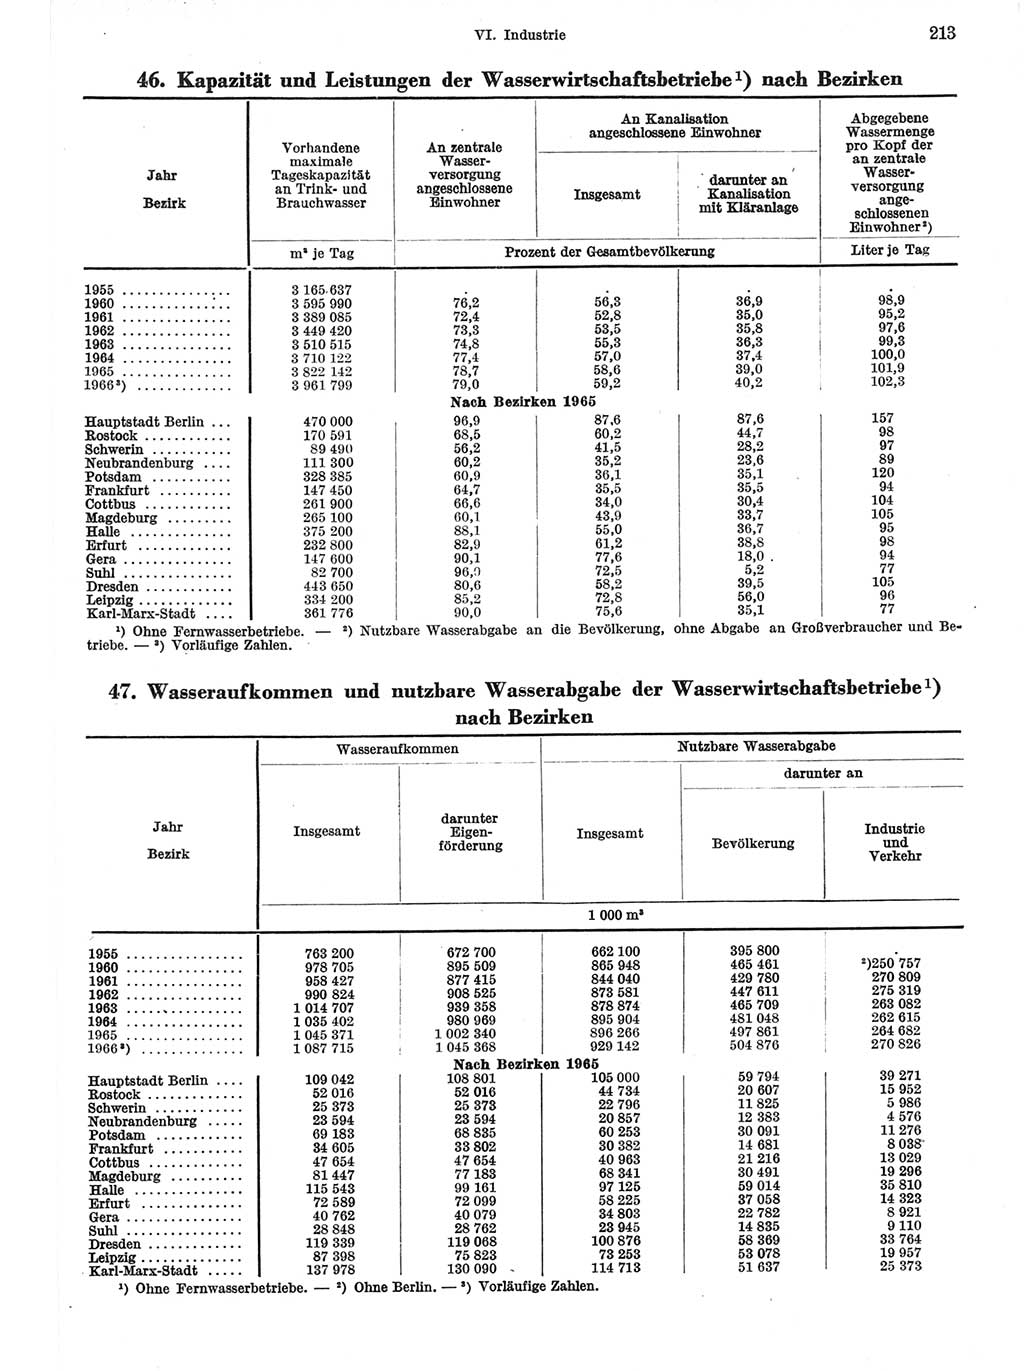 Statistisches Jahrbuch der Deutschen Demokratischen Republik (DDR) 1967, Seite 213 (Stat. Jb. DDR 1967, S. 213)